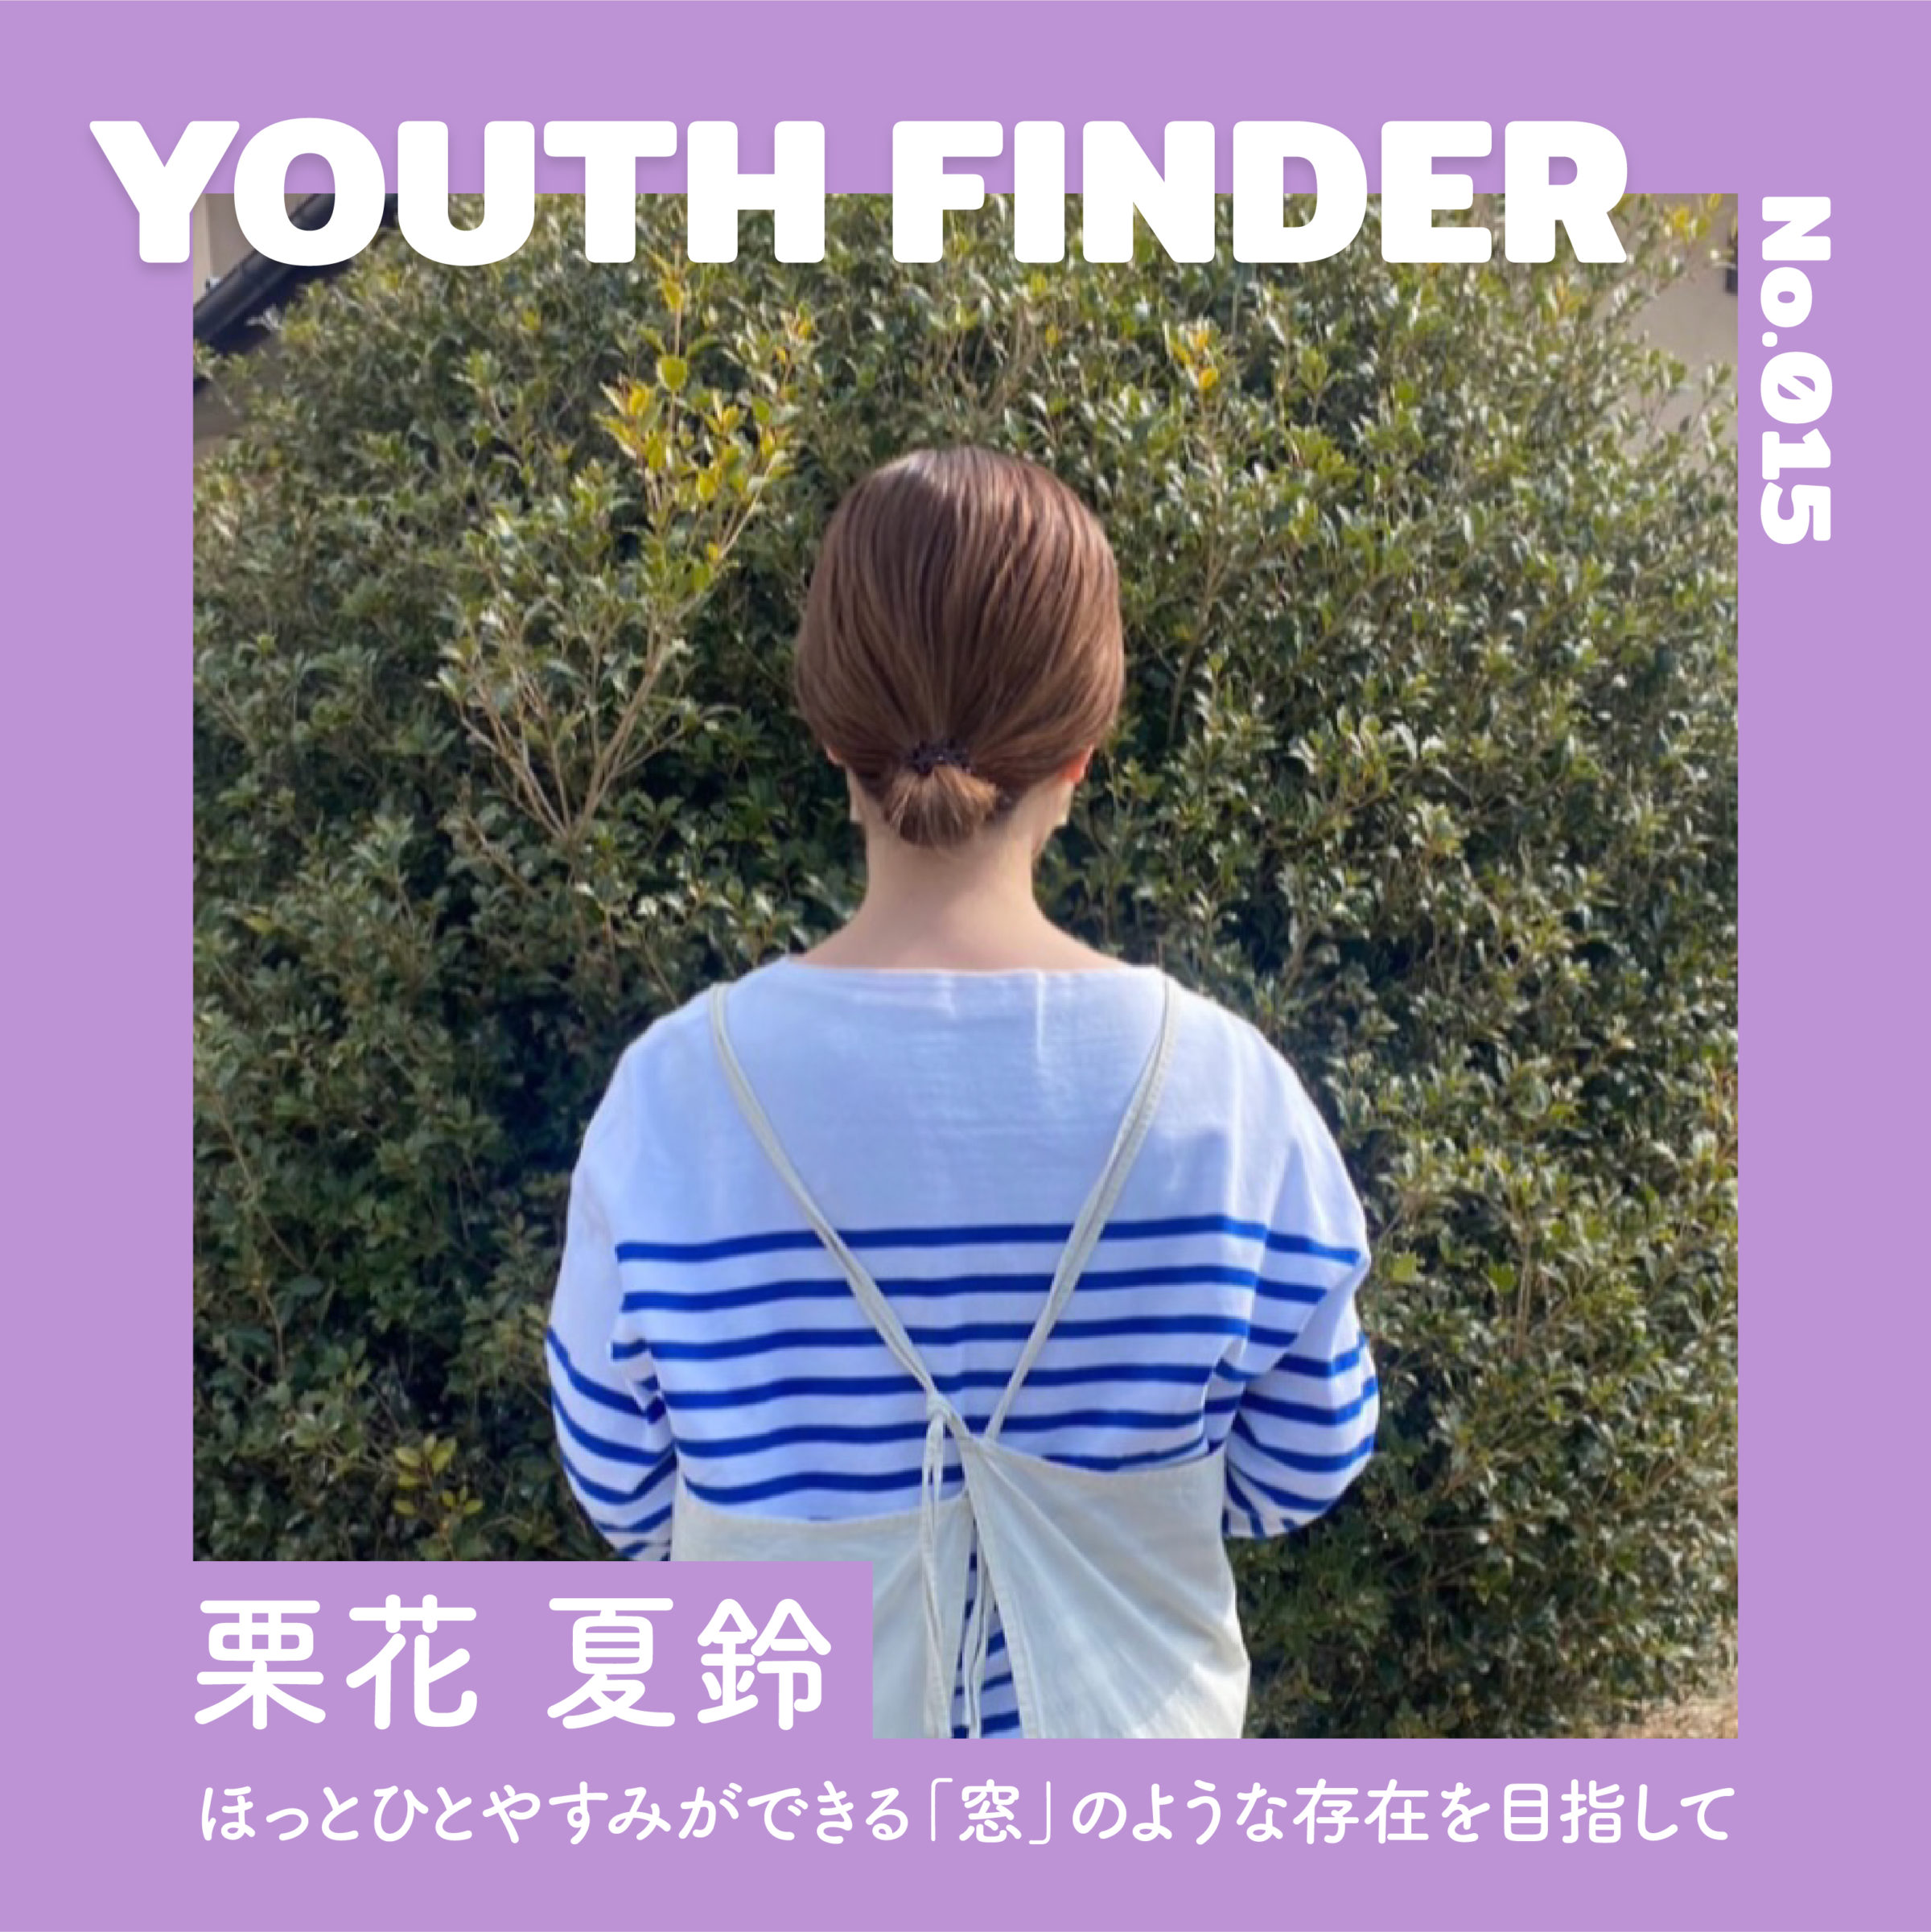 ほっとひとやすみができる「窓」のような存在を目指して　 栗花 夏鈴さん【Youth Finder】のサムネイル